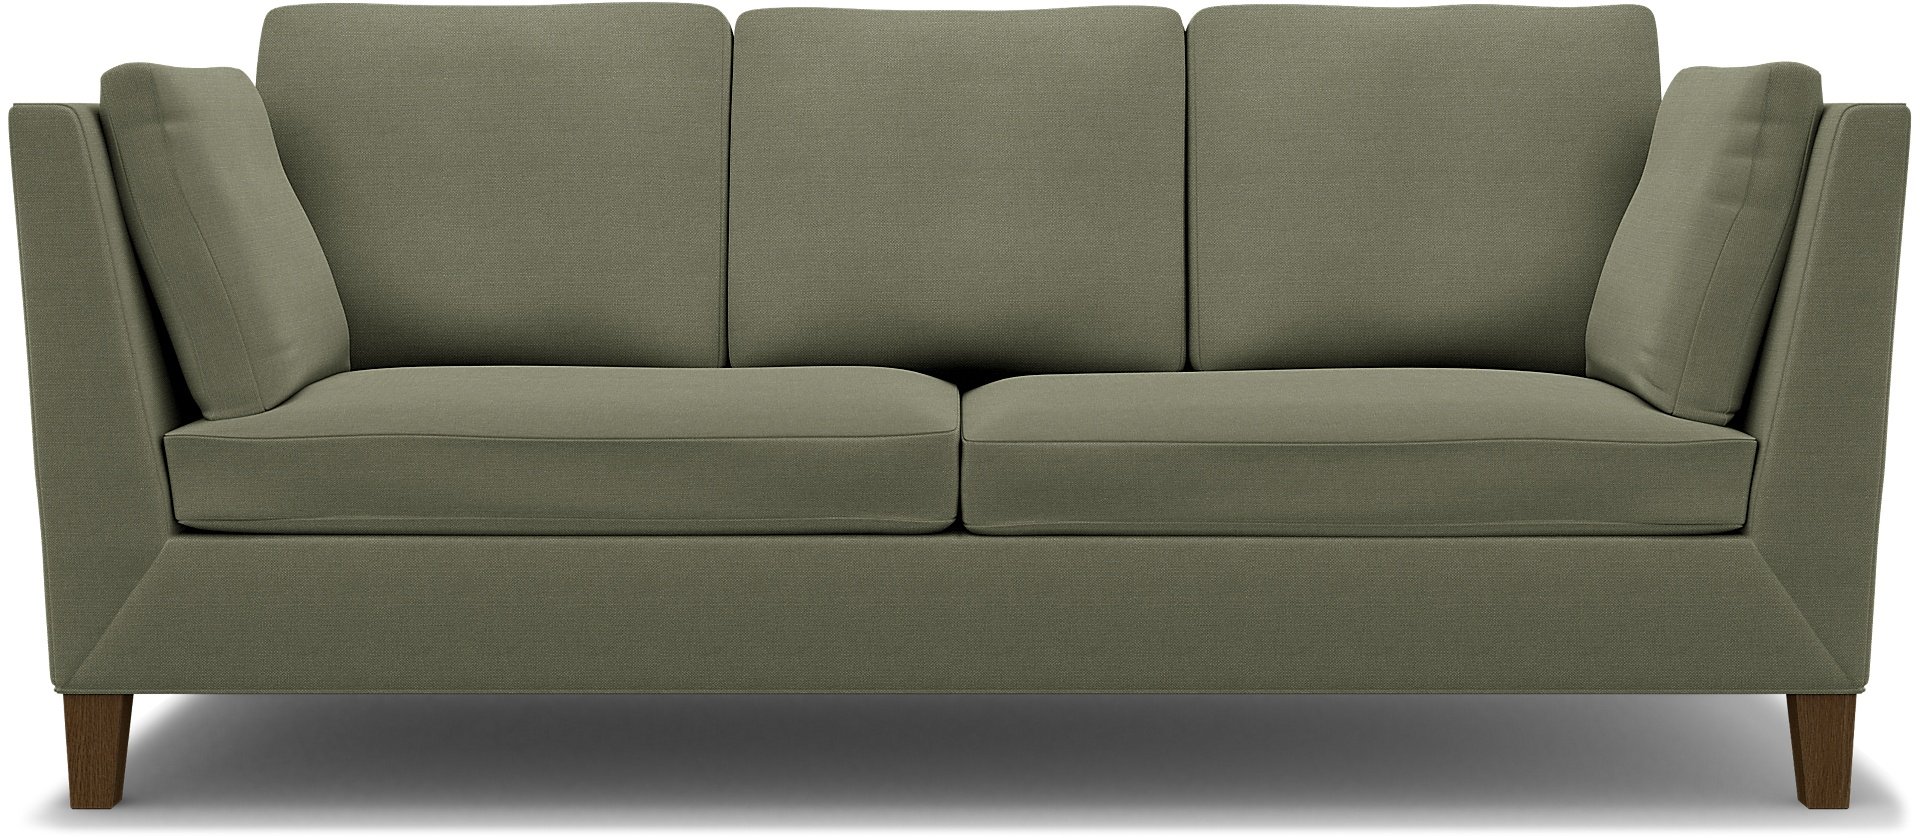 IKEA - Stockholm 3 Seater Sofa Cover , Sage, Linen - Bemz